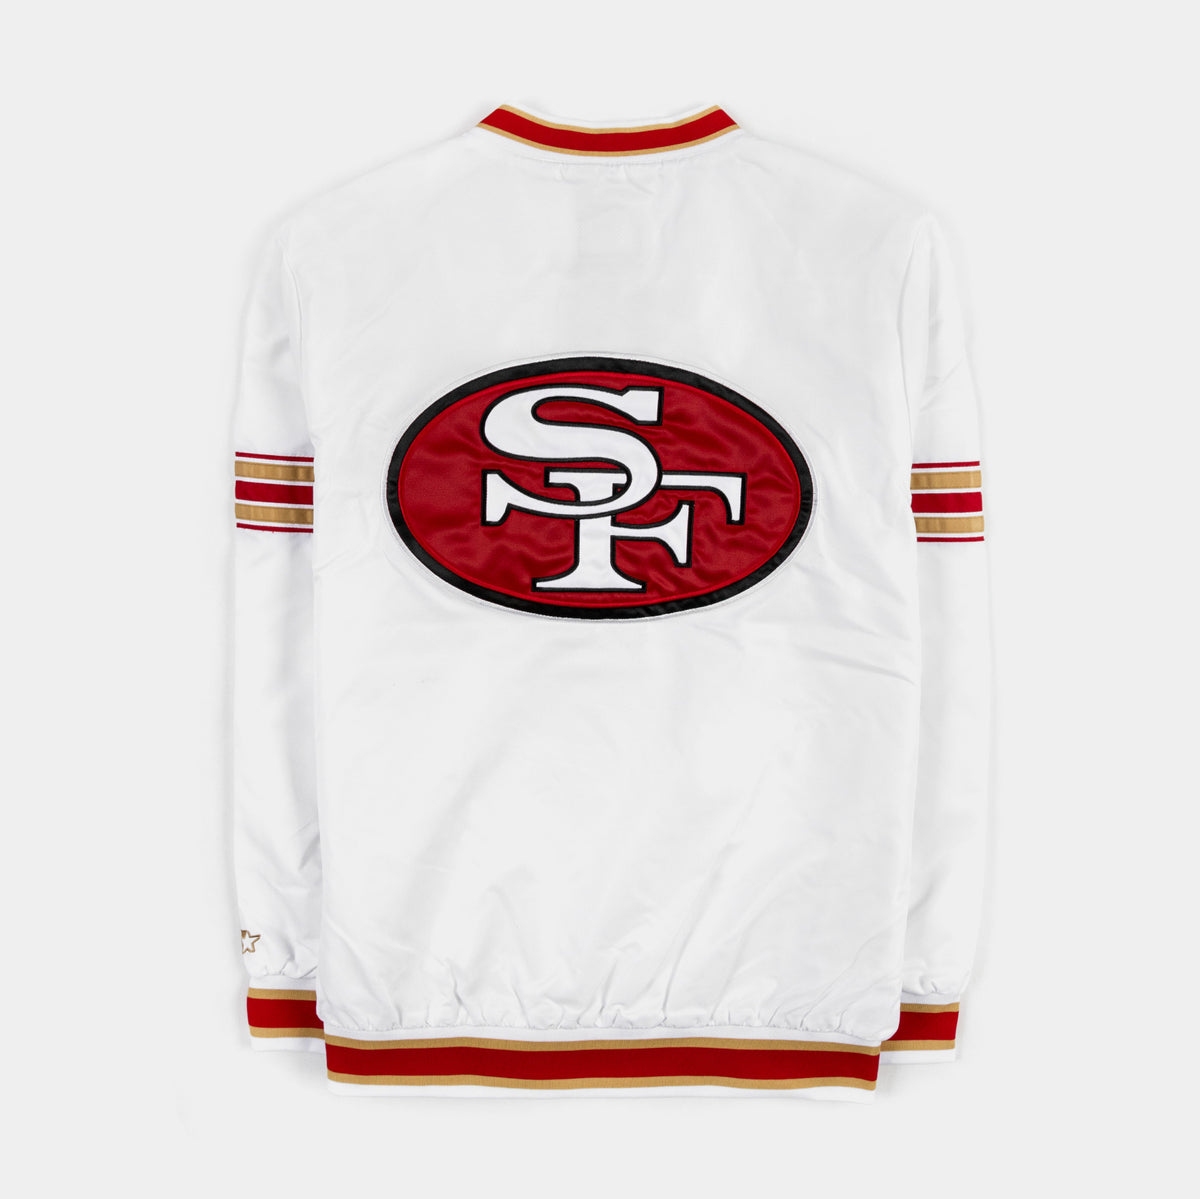 GIII/STARTER San Francisco 49ers Letterman Jacket Mens Jacket (Gold/Red)